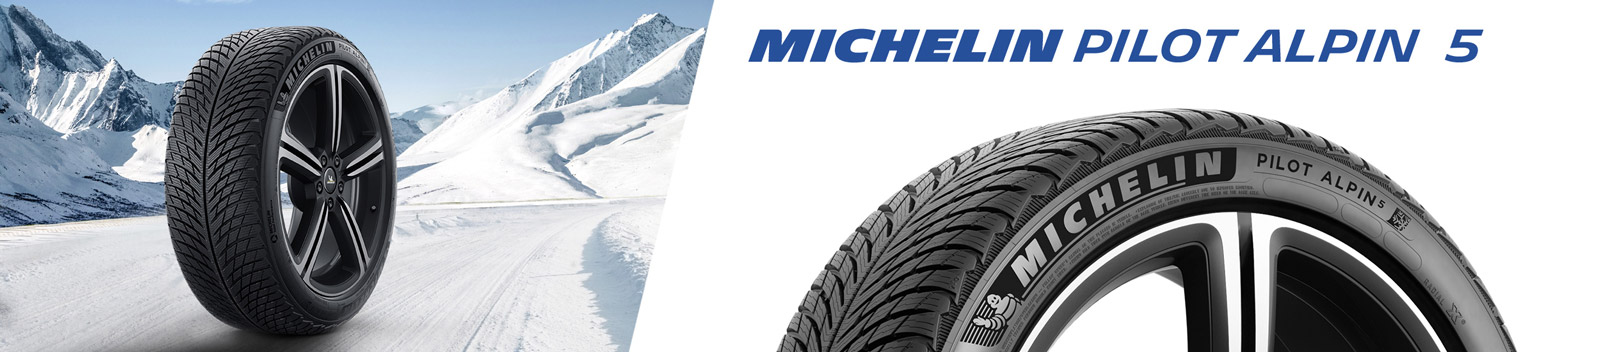 Michelin_Pilot-Alpin